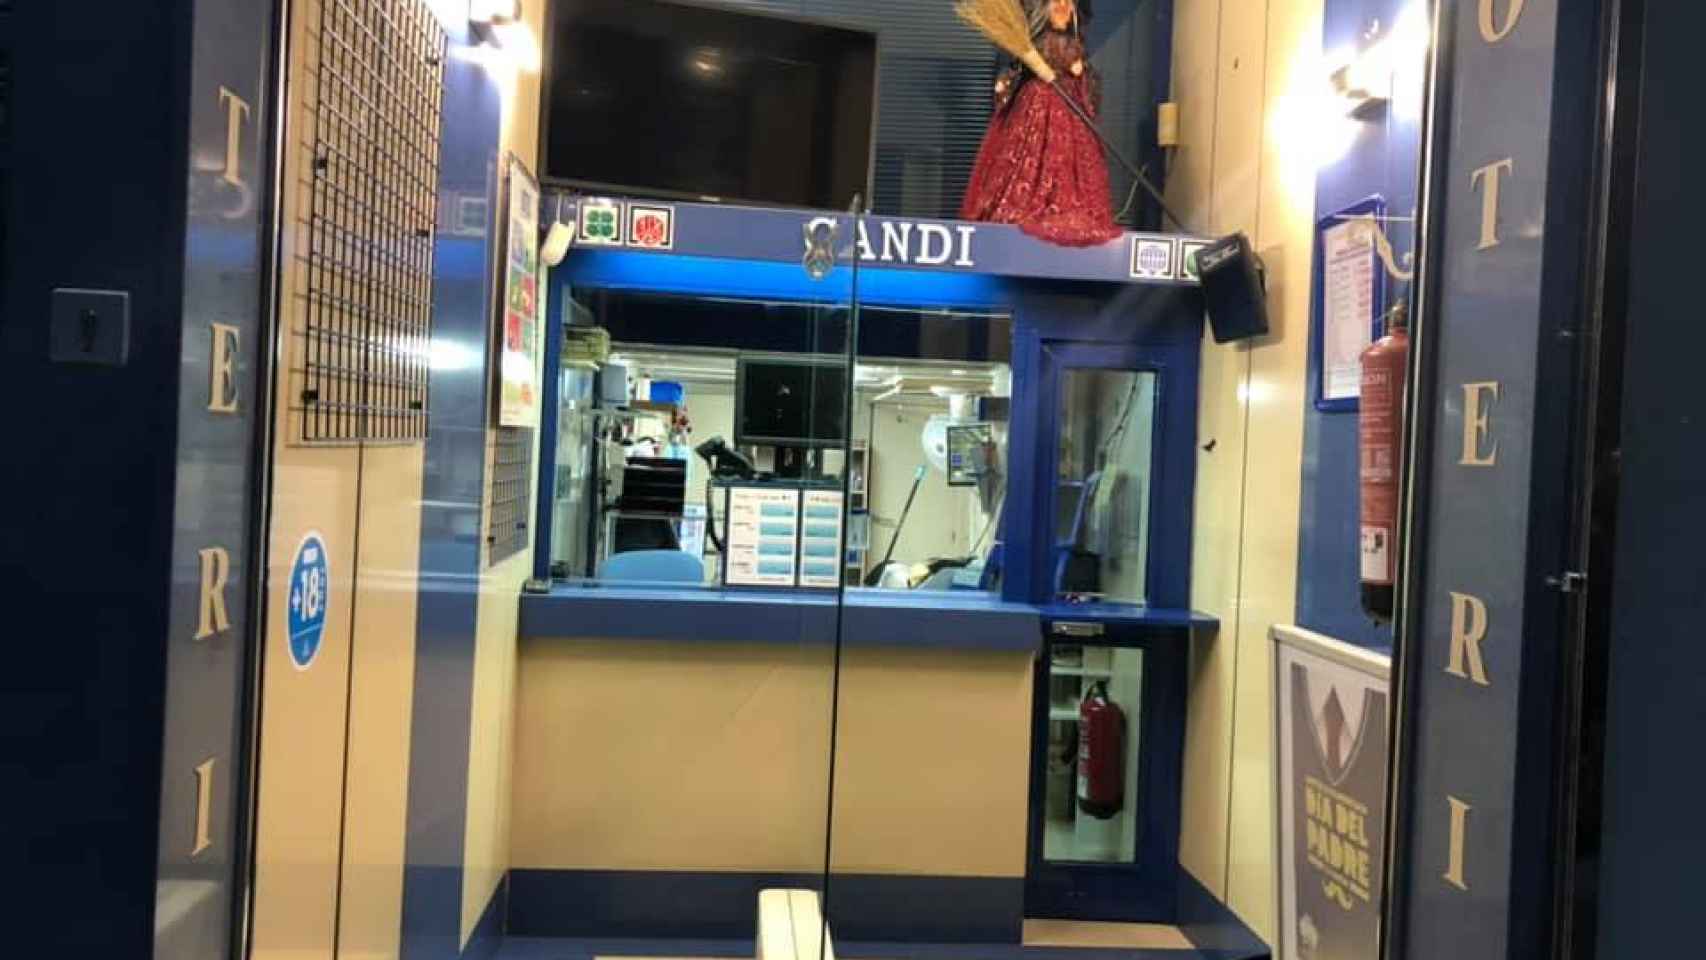 Administración de loterías Candi (Cáceres)